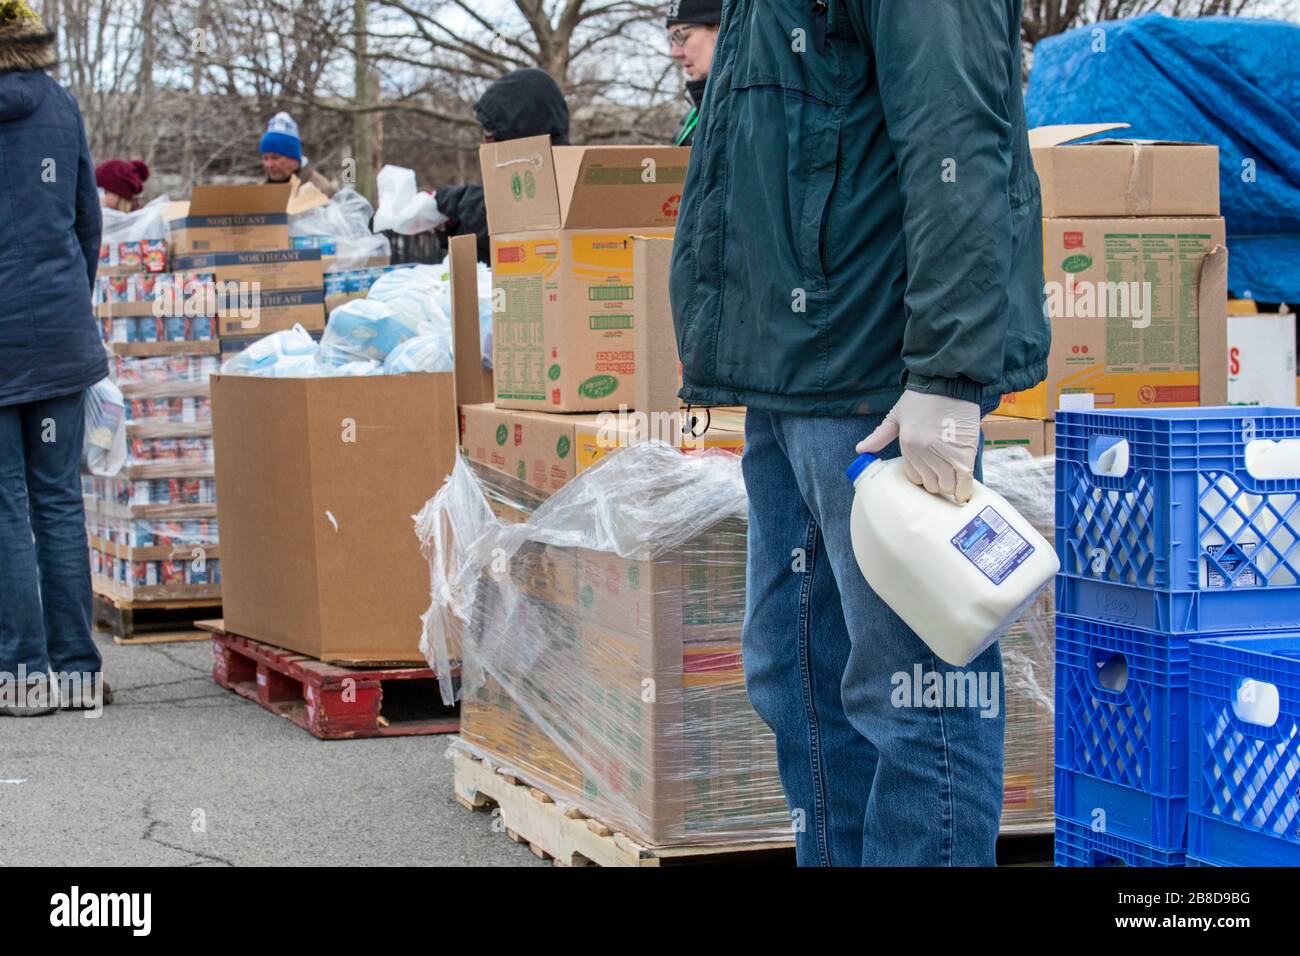 Detroit, Michigan, USA. März 2020. Während der Coronavirus-Krise verteilt die Gleaners Community Food Bank kostenlose Lebensmittel an bedürftige Bewohner im Südwesten Detroits. Kredit: Jim West/Alamy Live News Stockfoto